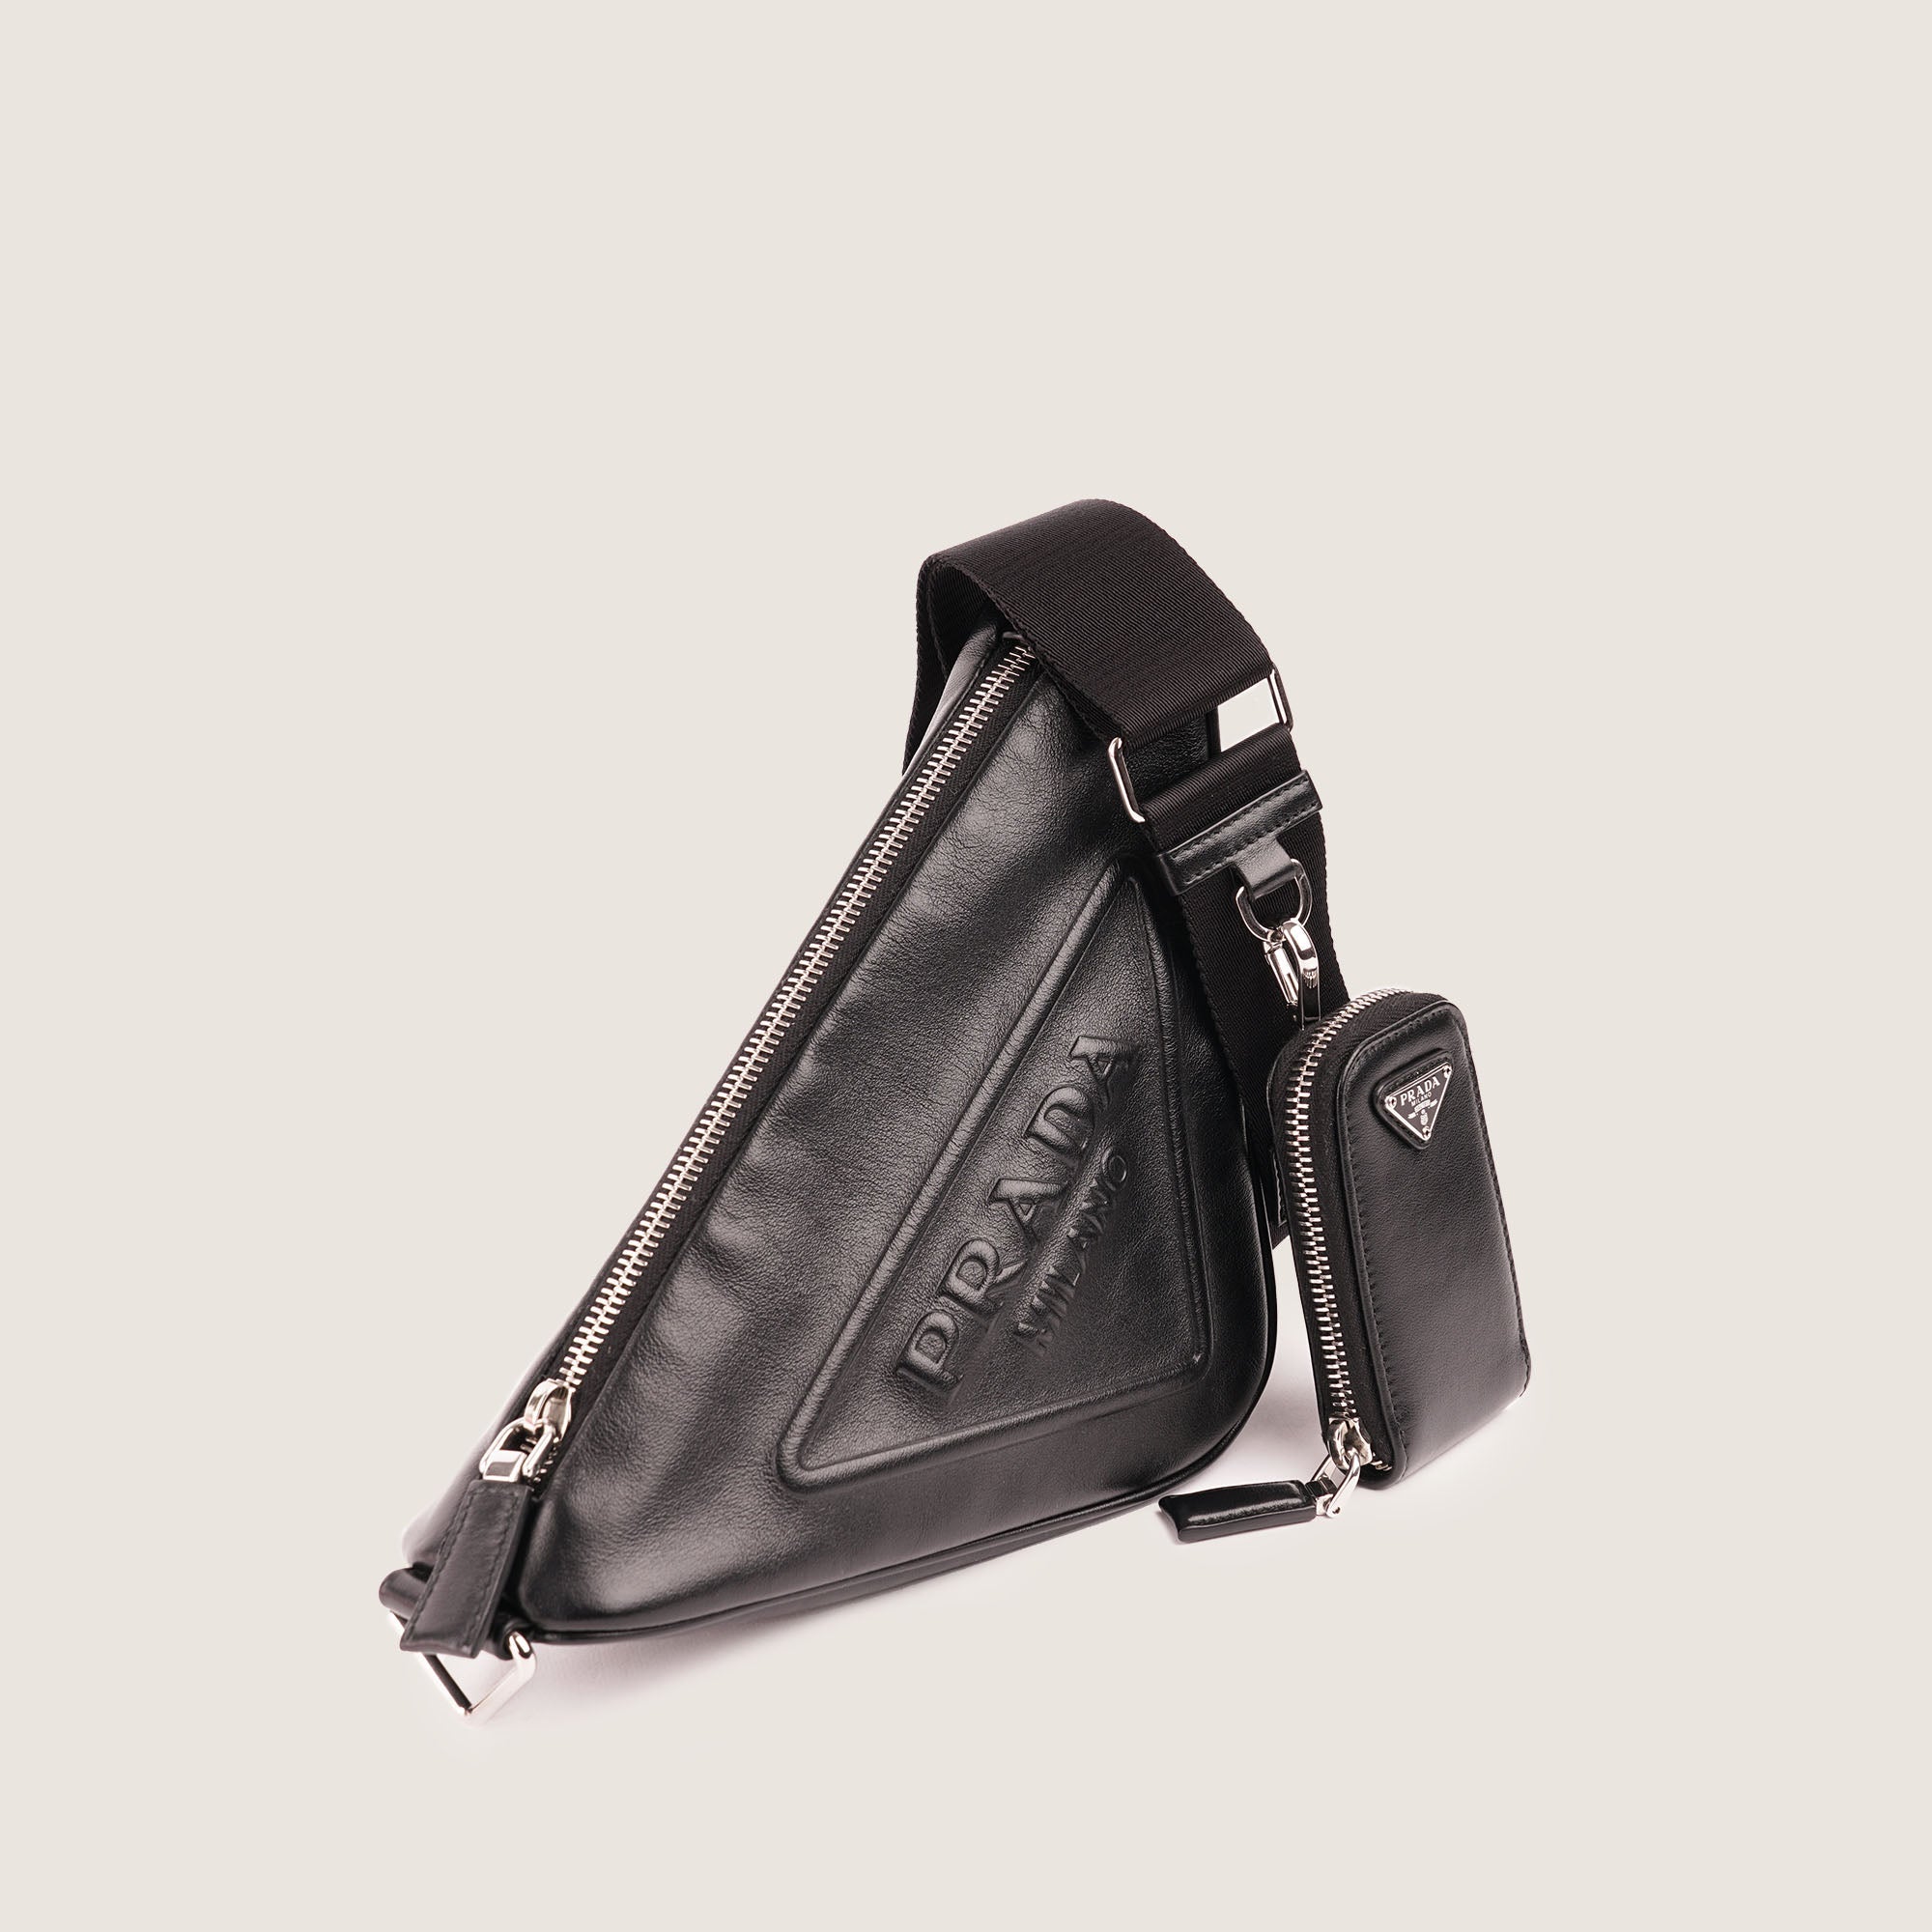 Triangle Shoulder Bag - PRADA - Affordable Luxury image